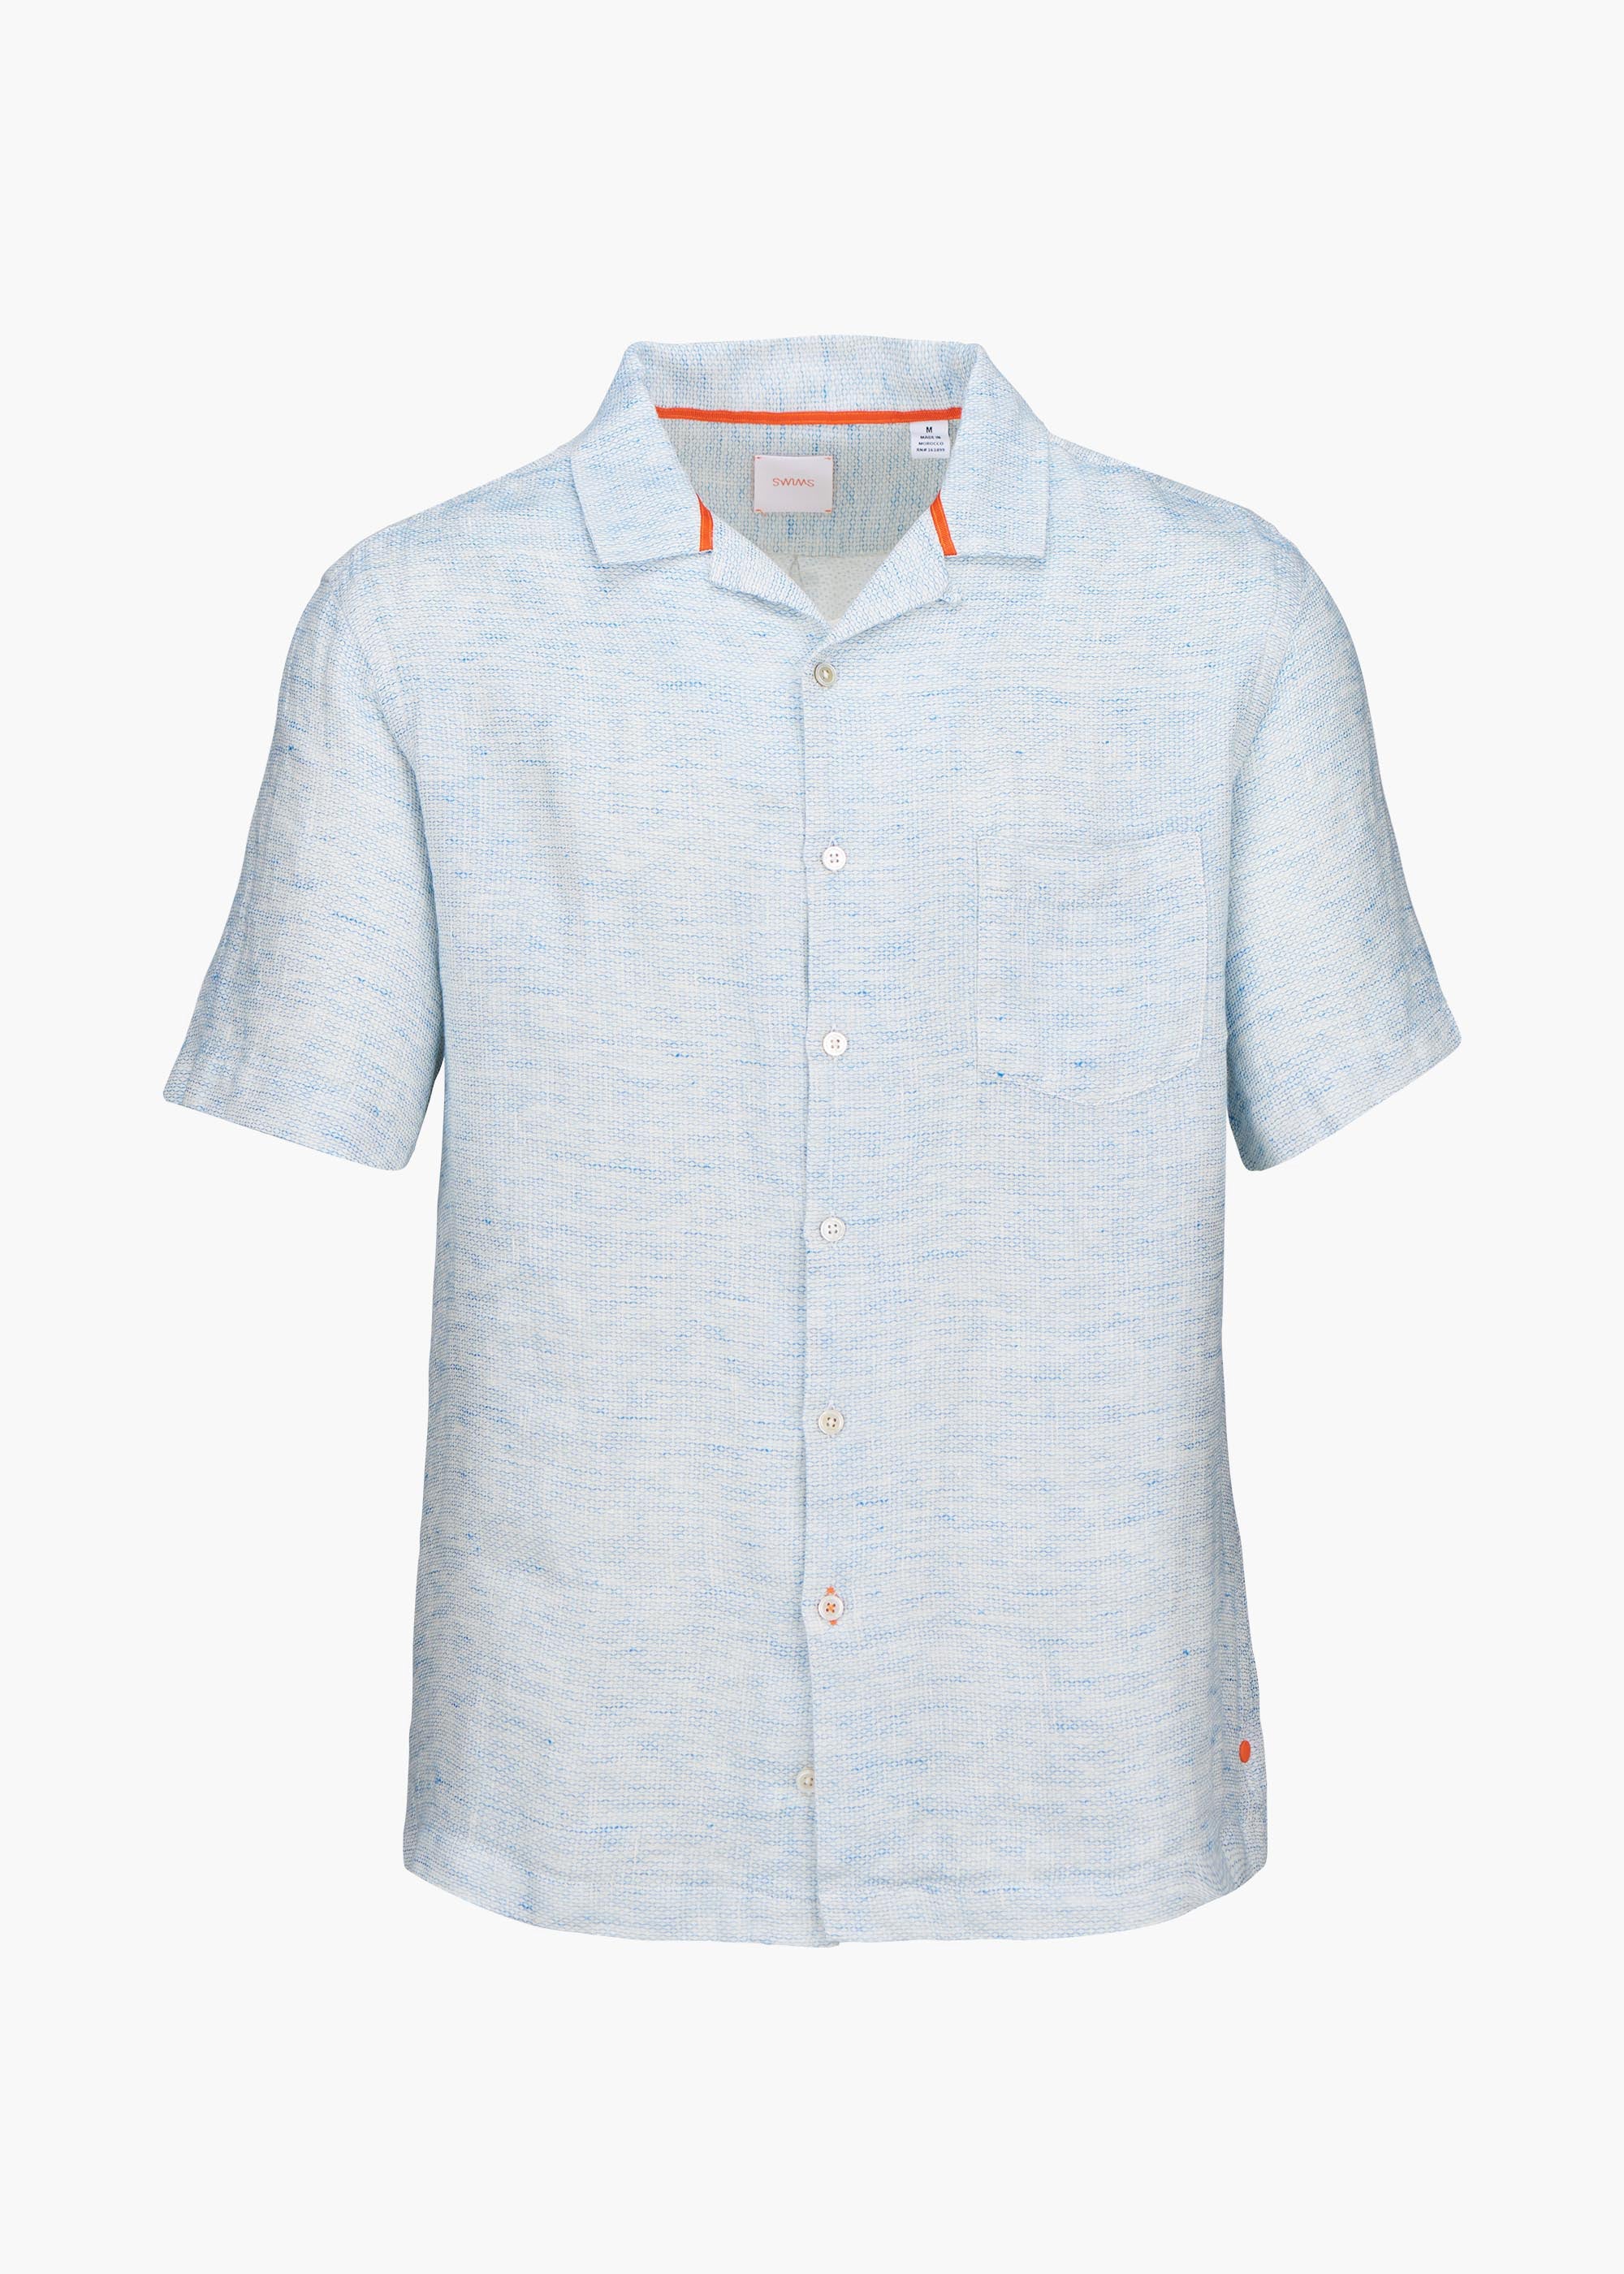 Capri Linen Shirt - background::white,variant::Blue Skies Linen